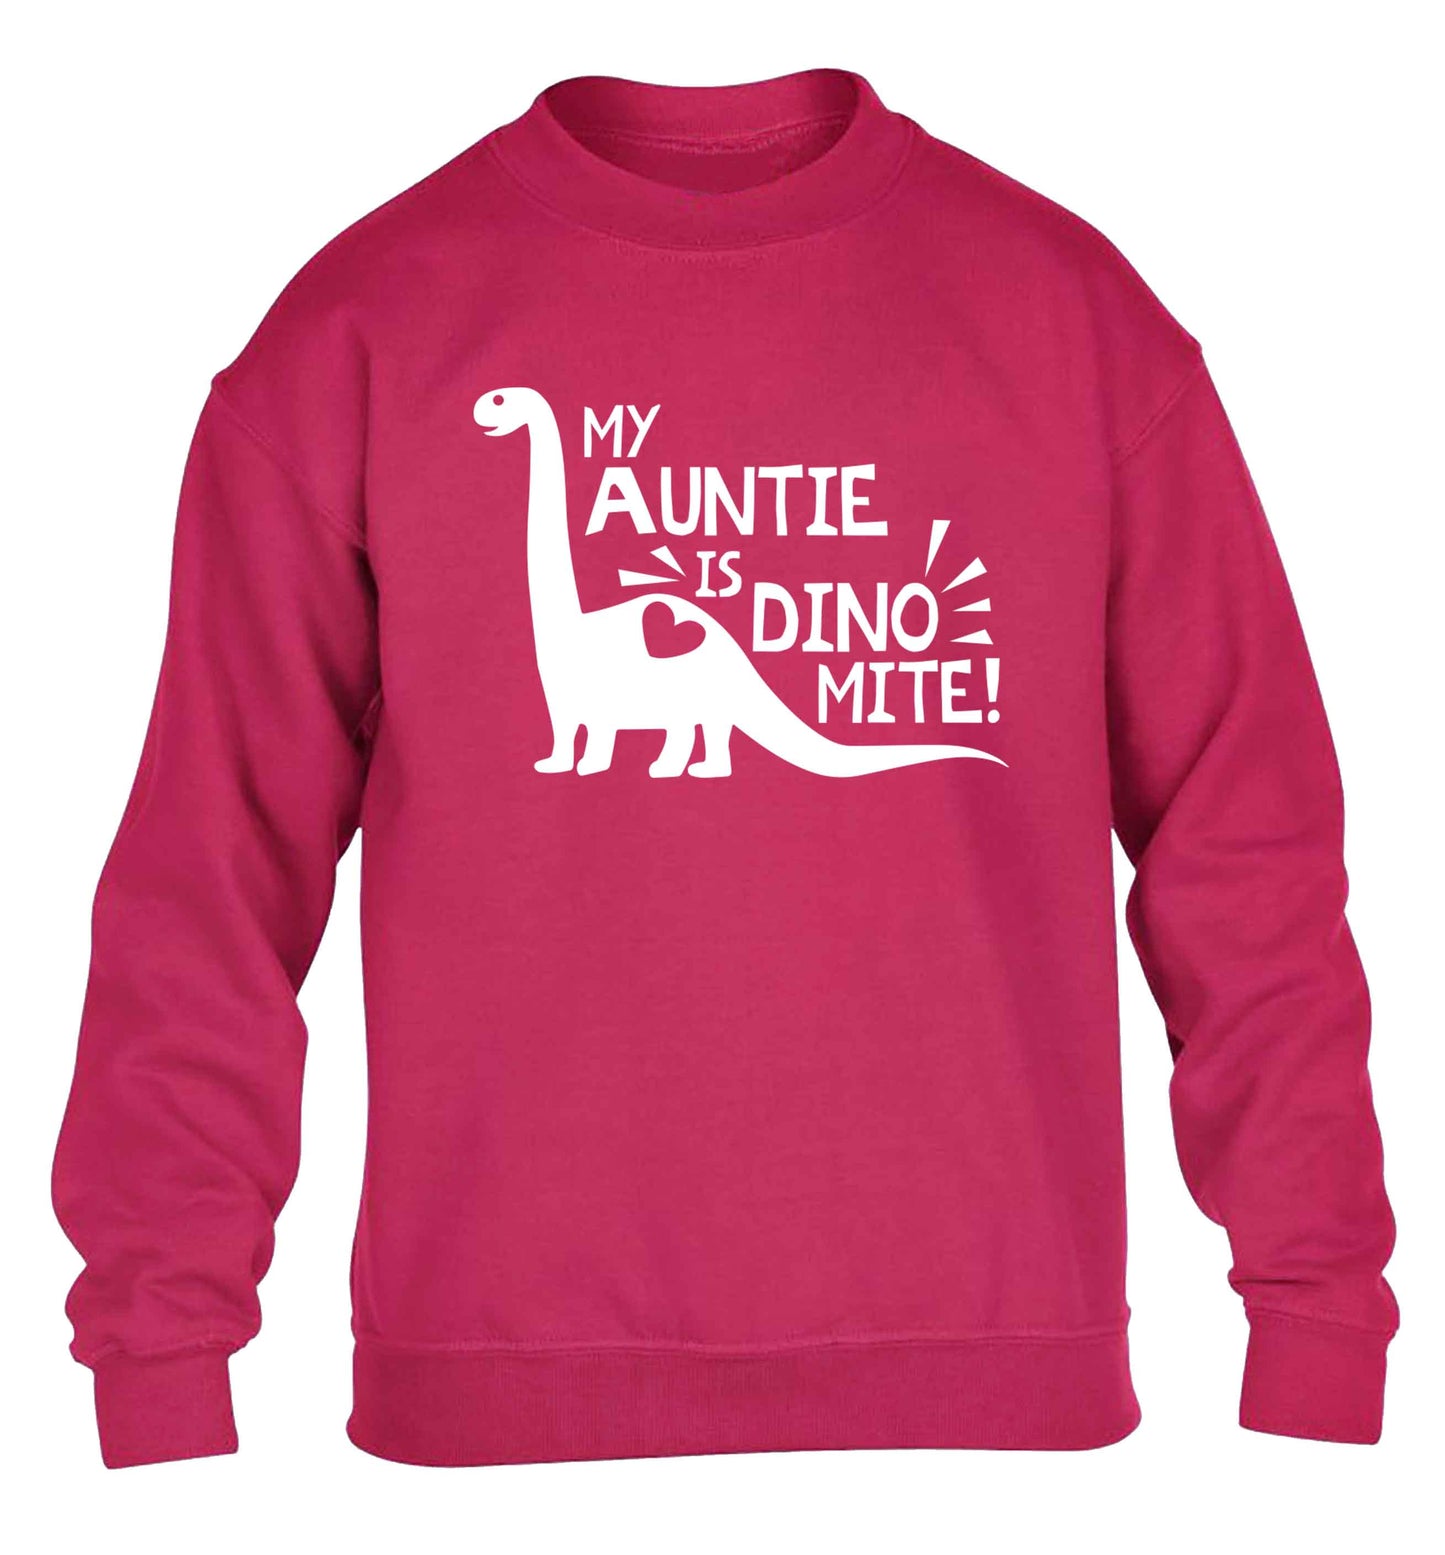 My auntie is dinomite! children's pink sweater 12-13 Years